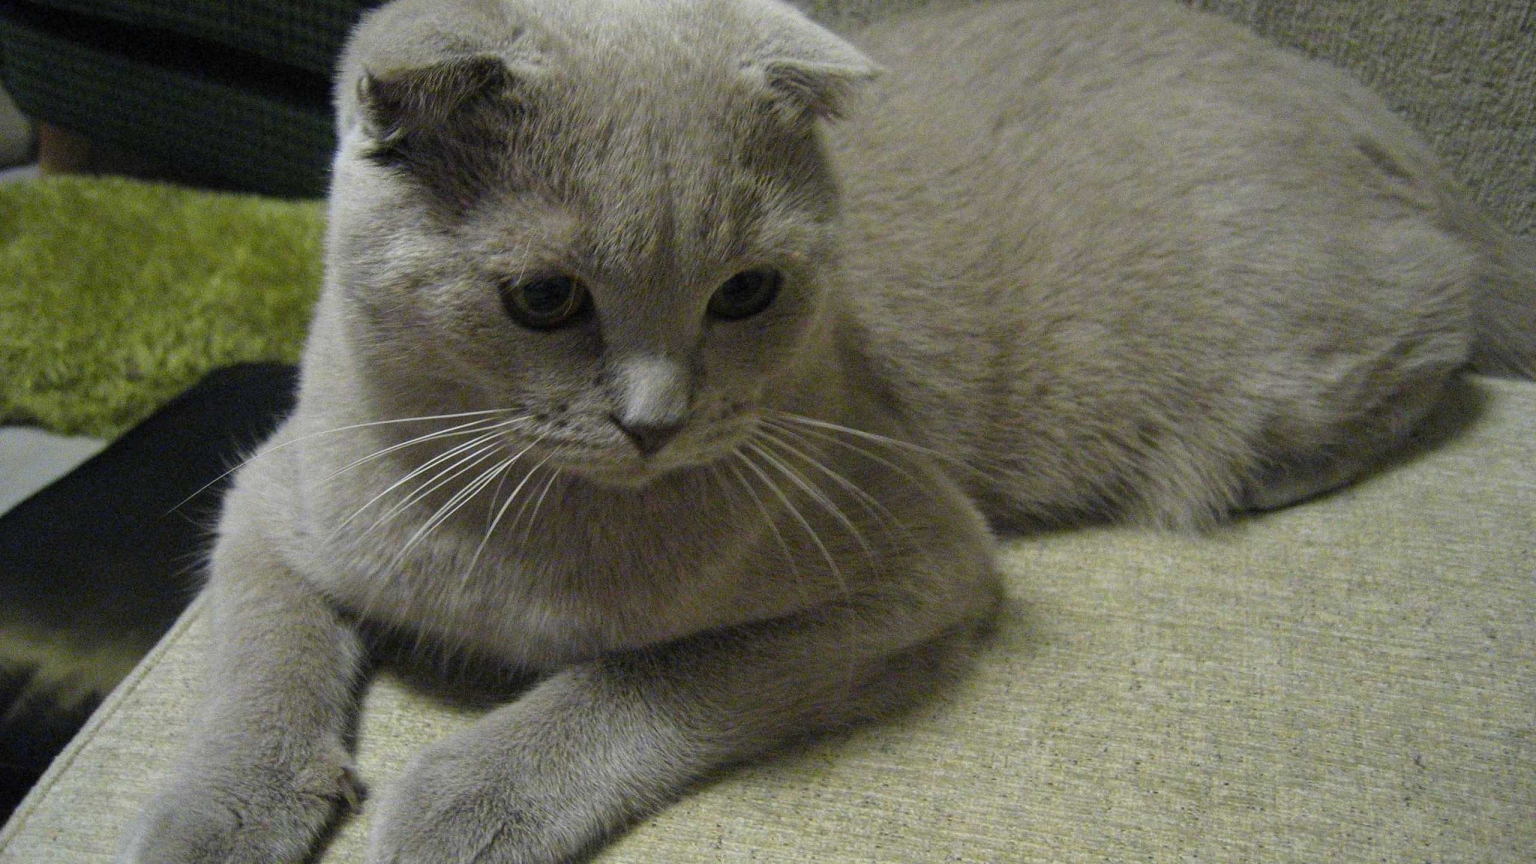 Alert Scottish Fold Cat for 1536 x 864 HDTV resolution